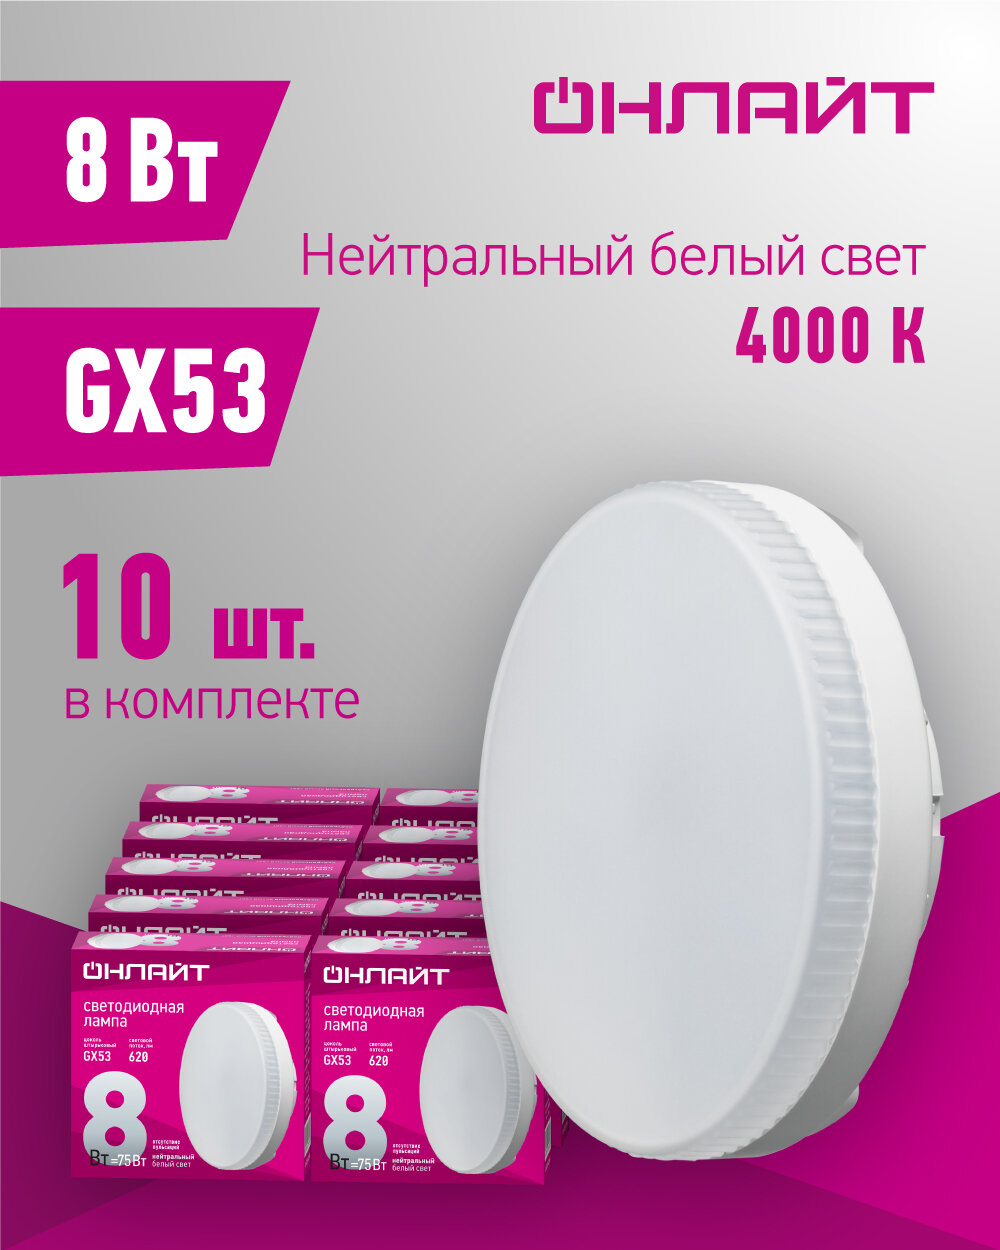 Лампа светодиодная онлайт 71 639, 8 Вт, таблетка GX53, дневной свет 4000К, упаковка 10 шт.